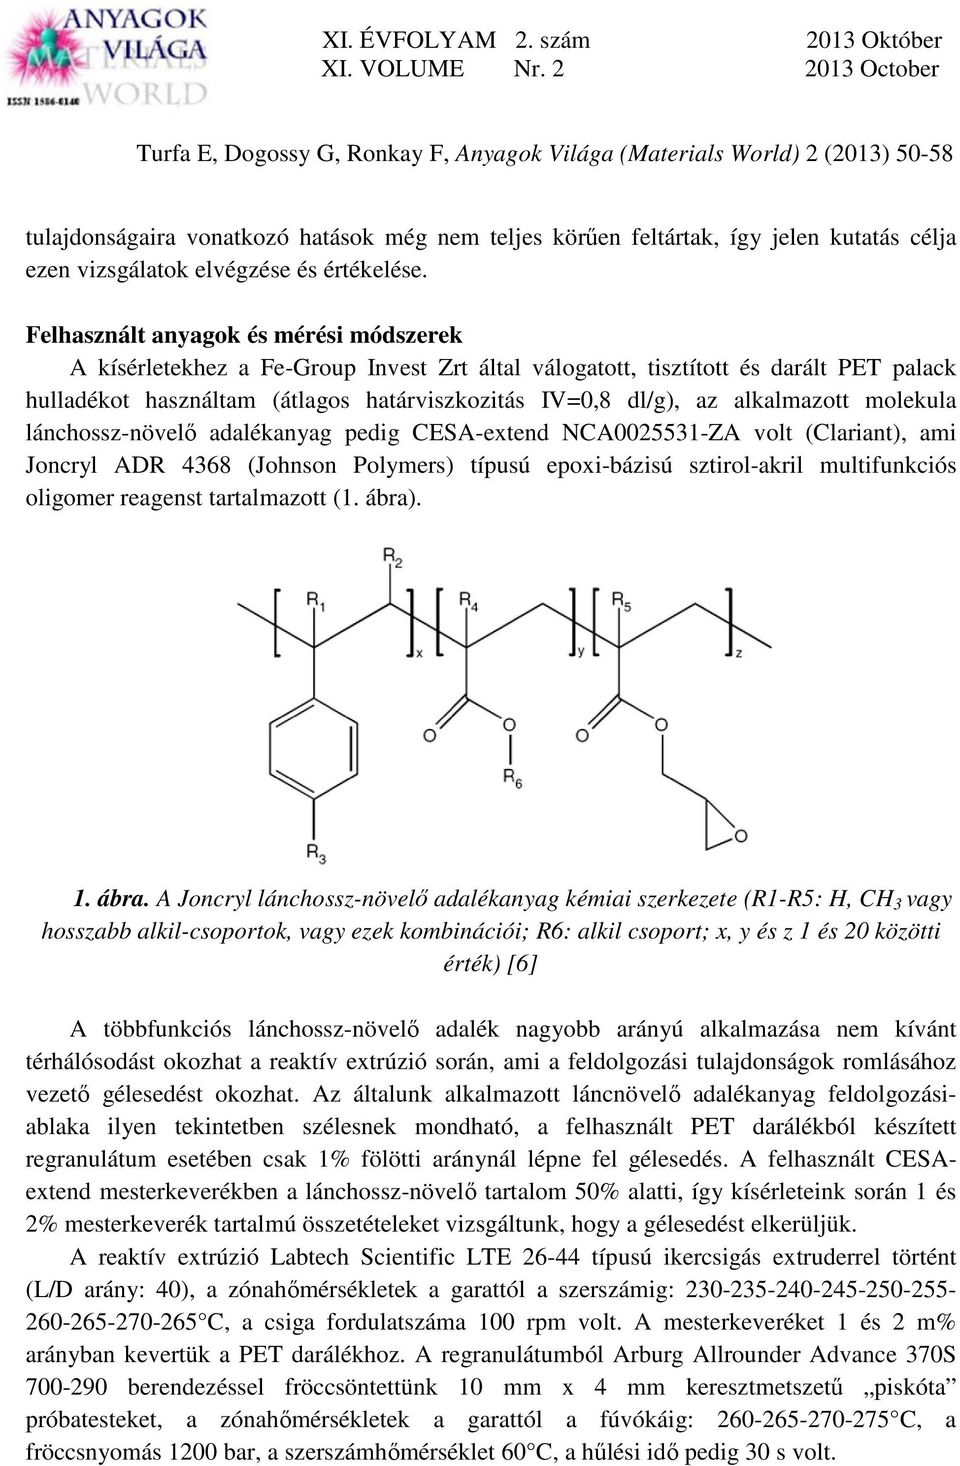 alkalmazott molekula lánchossz-növelő adalékanyag pedig CESA-extend NCA25531-ZA volt (Clariant), ami Joncryl ADR 4368 (Johnson Polymers) típusú epoxi-bázisú sztirol-akril multifunkciós oligomer